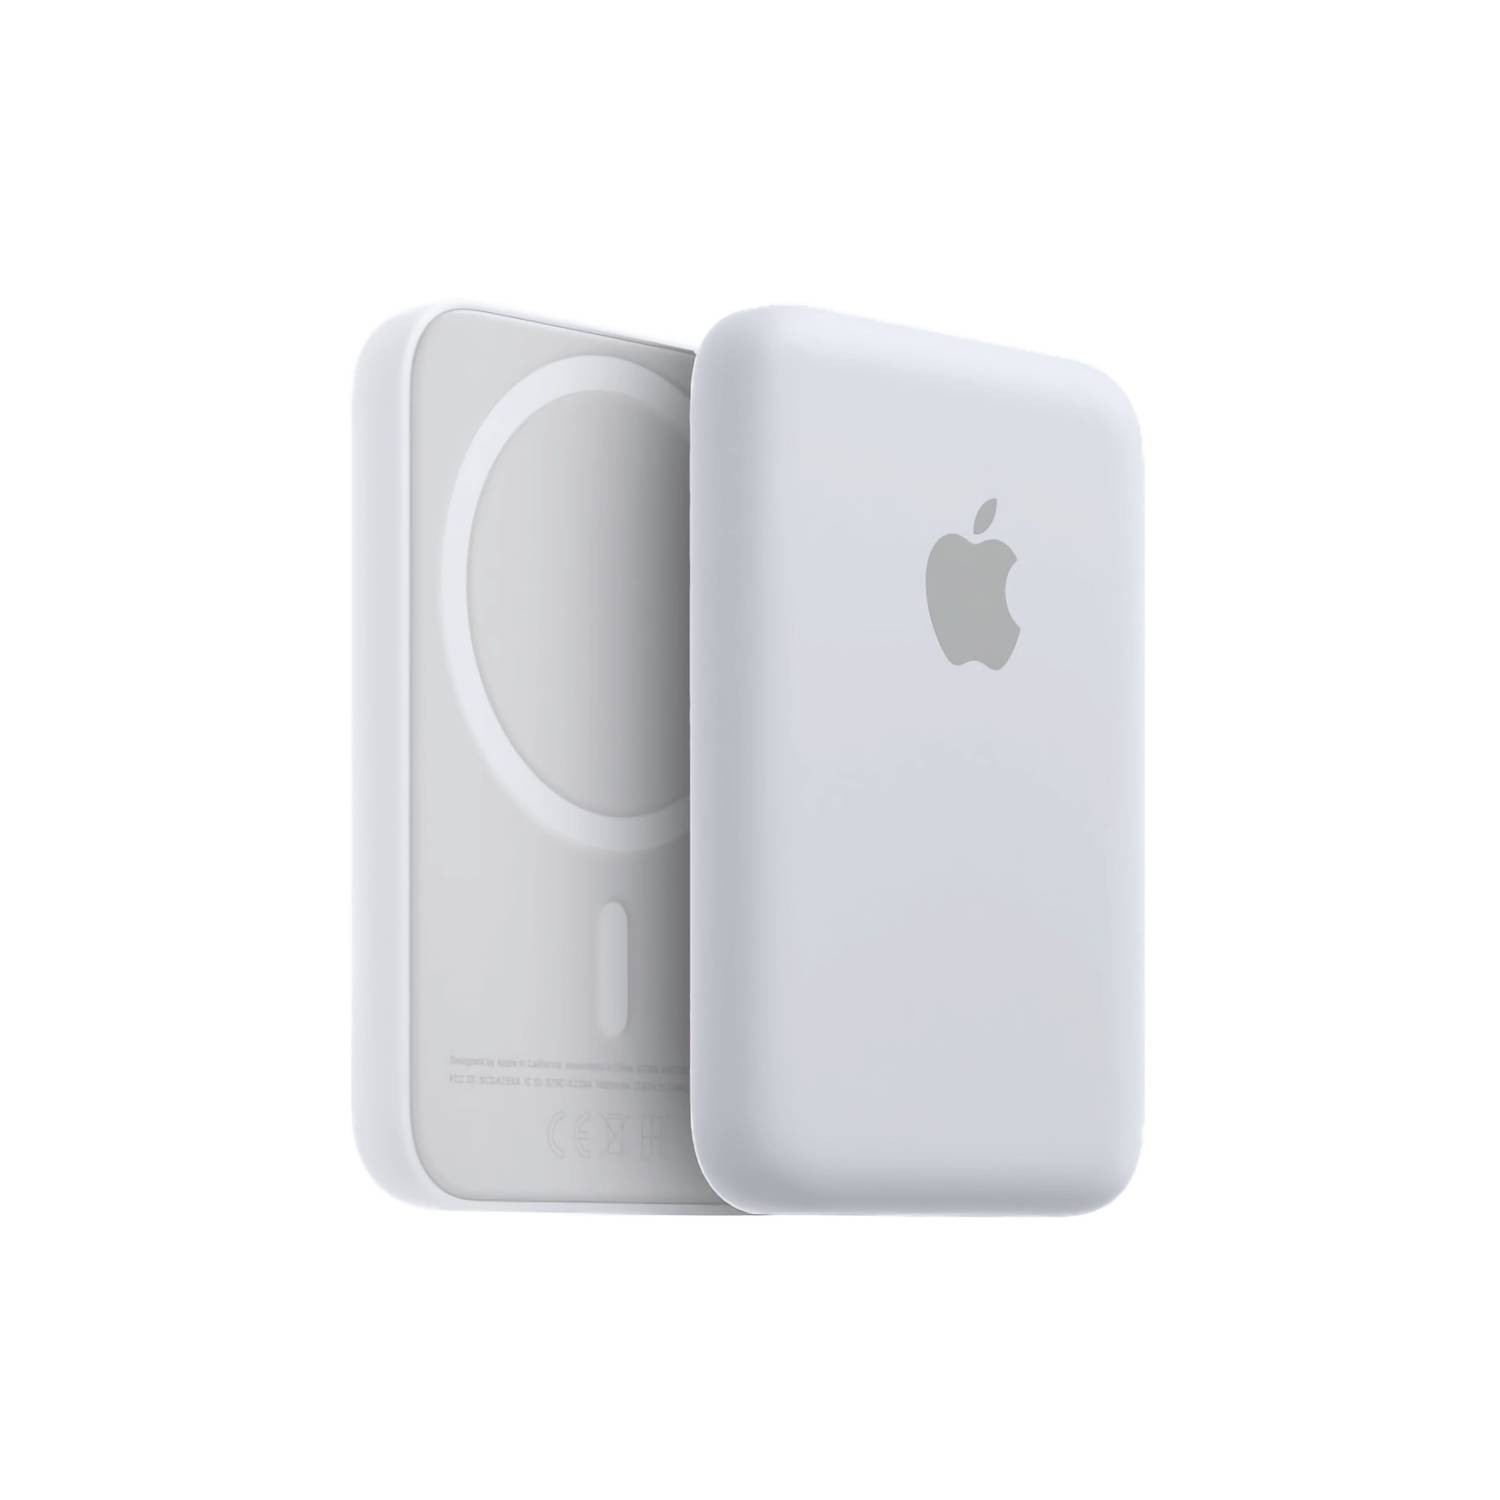 Batería Apple MagSafe, carga inalámbrica para dispositivos MagSafe